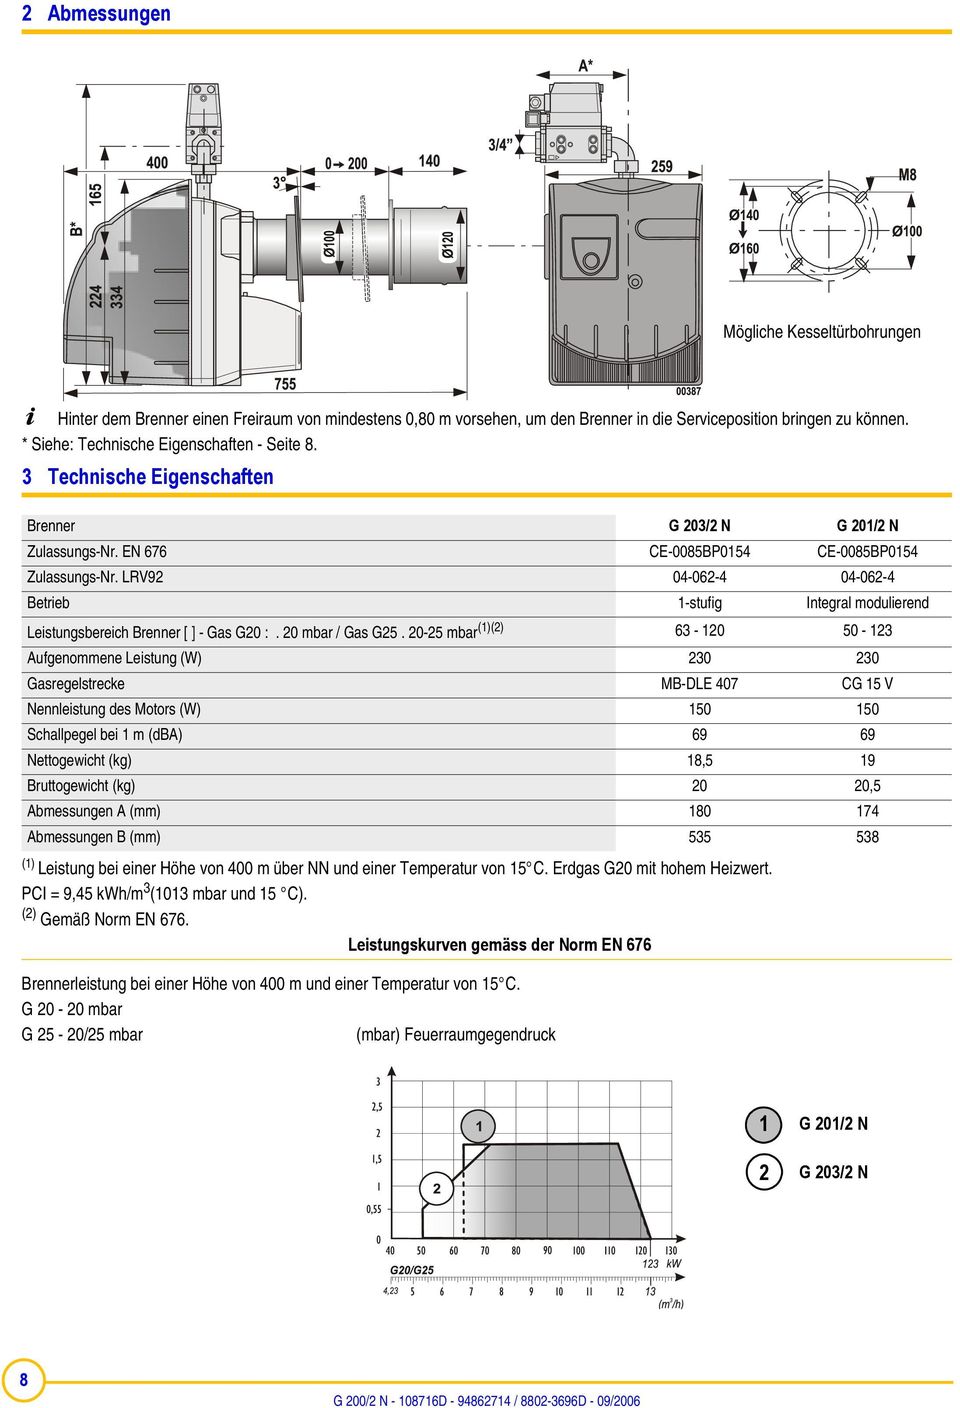 LRV92 04-062-4 04-062-4 Betrieb 1-stufig Integral modulierend Leistungsbereich Brenner [ ] - Gas G20 :. 20 mbar / Gas G25.